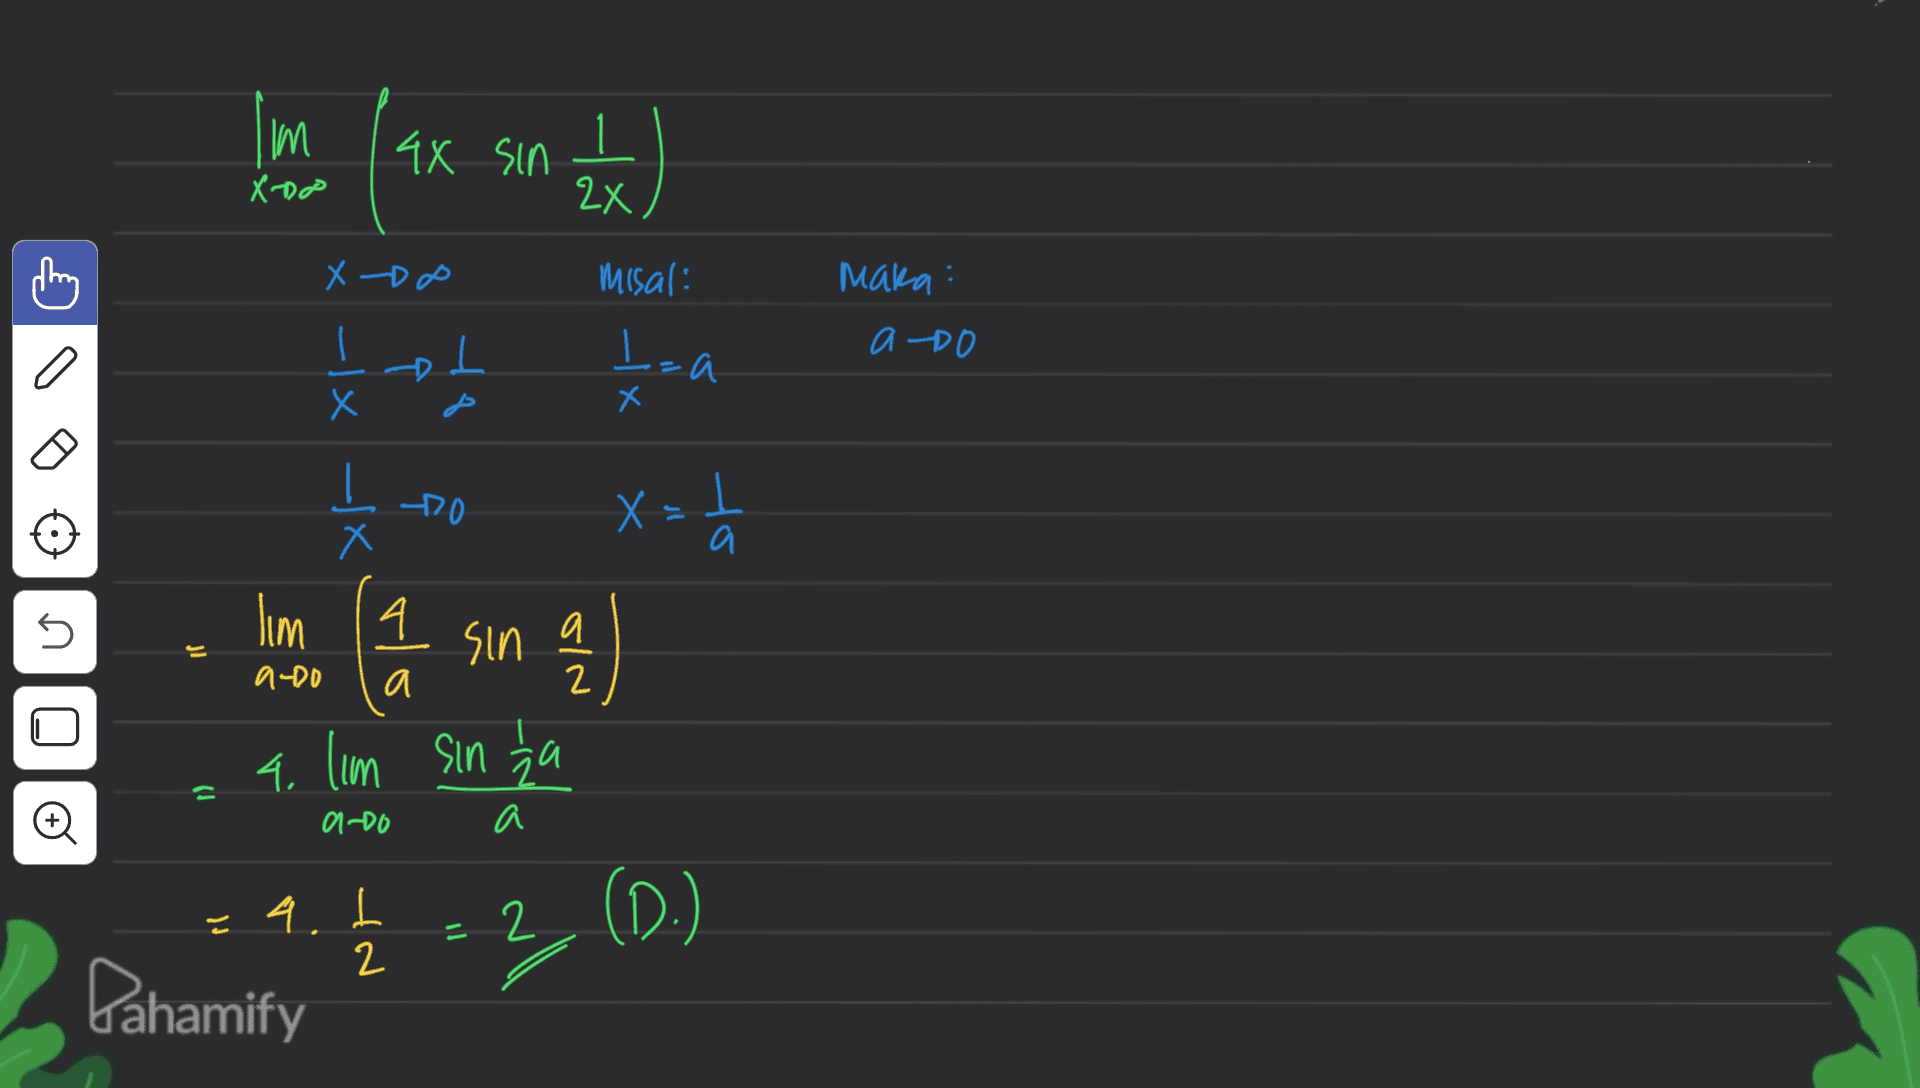 mil ( 43 4x sin (주 X-DO X -DO Misal: maka x -|x a Och D ㅗ - b=a х حل X -X Oct T = X x a 5 s lim 14 a sin jl a 2 올 ado 4. Ilm sin ha = o a-do a a. IN - 2 (D.) all 2 Pahamify 